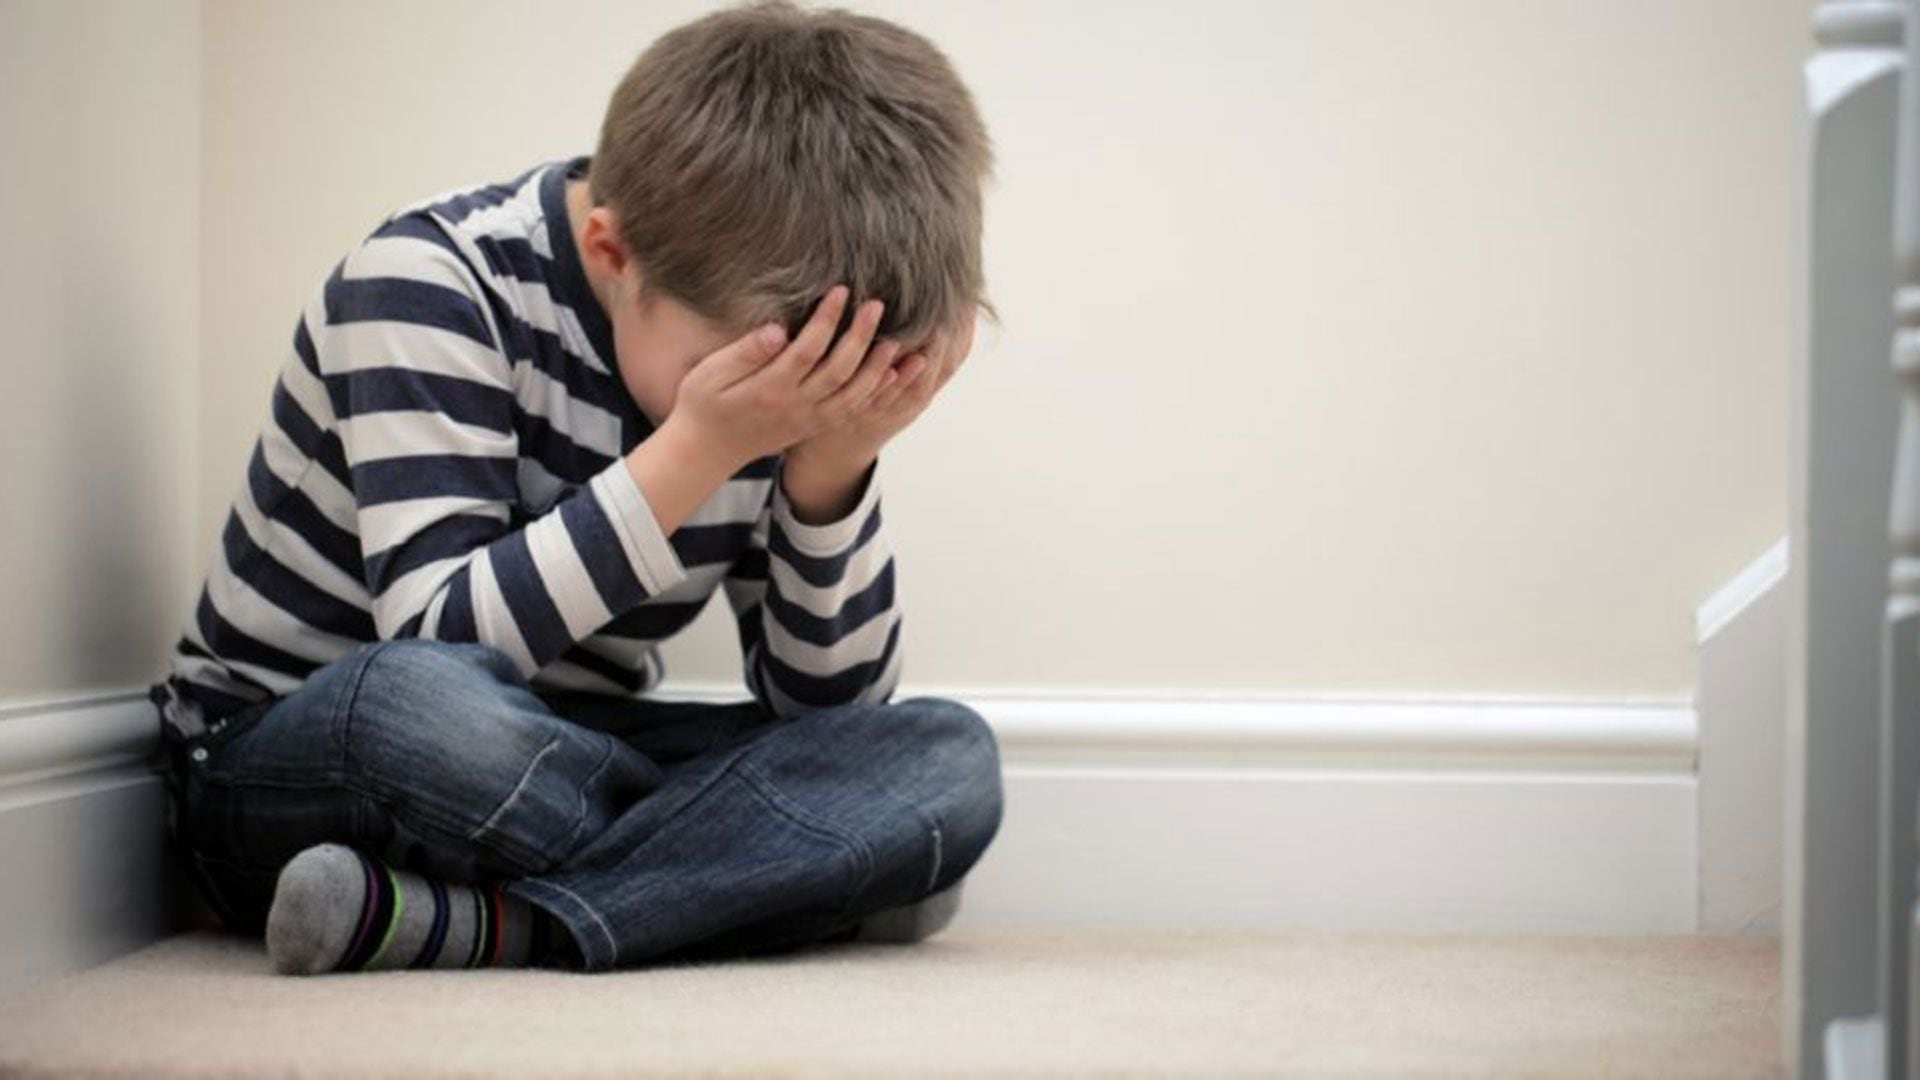 Los niños con trastorno bipolar suelen estar en un estado de ánimo depresivo o irritable la mayor parte del día, casi a diario, durante un brote de depresión